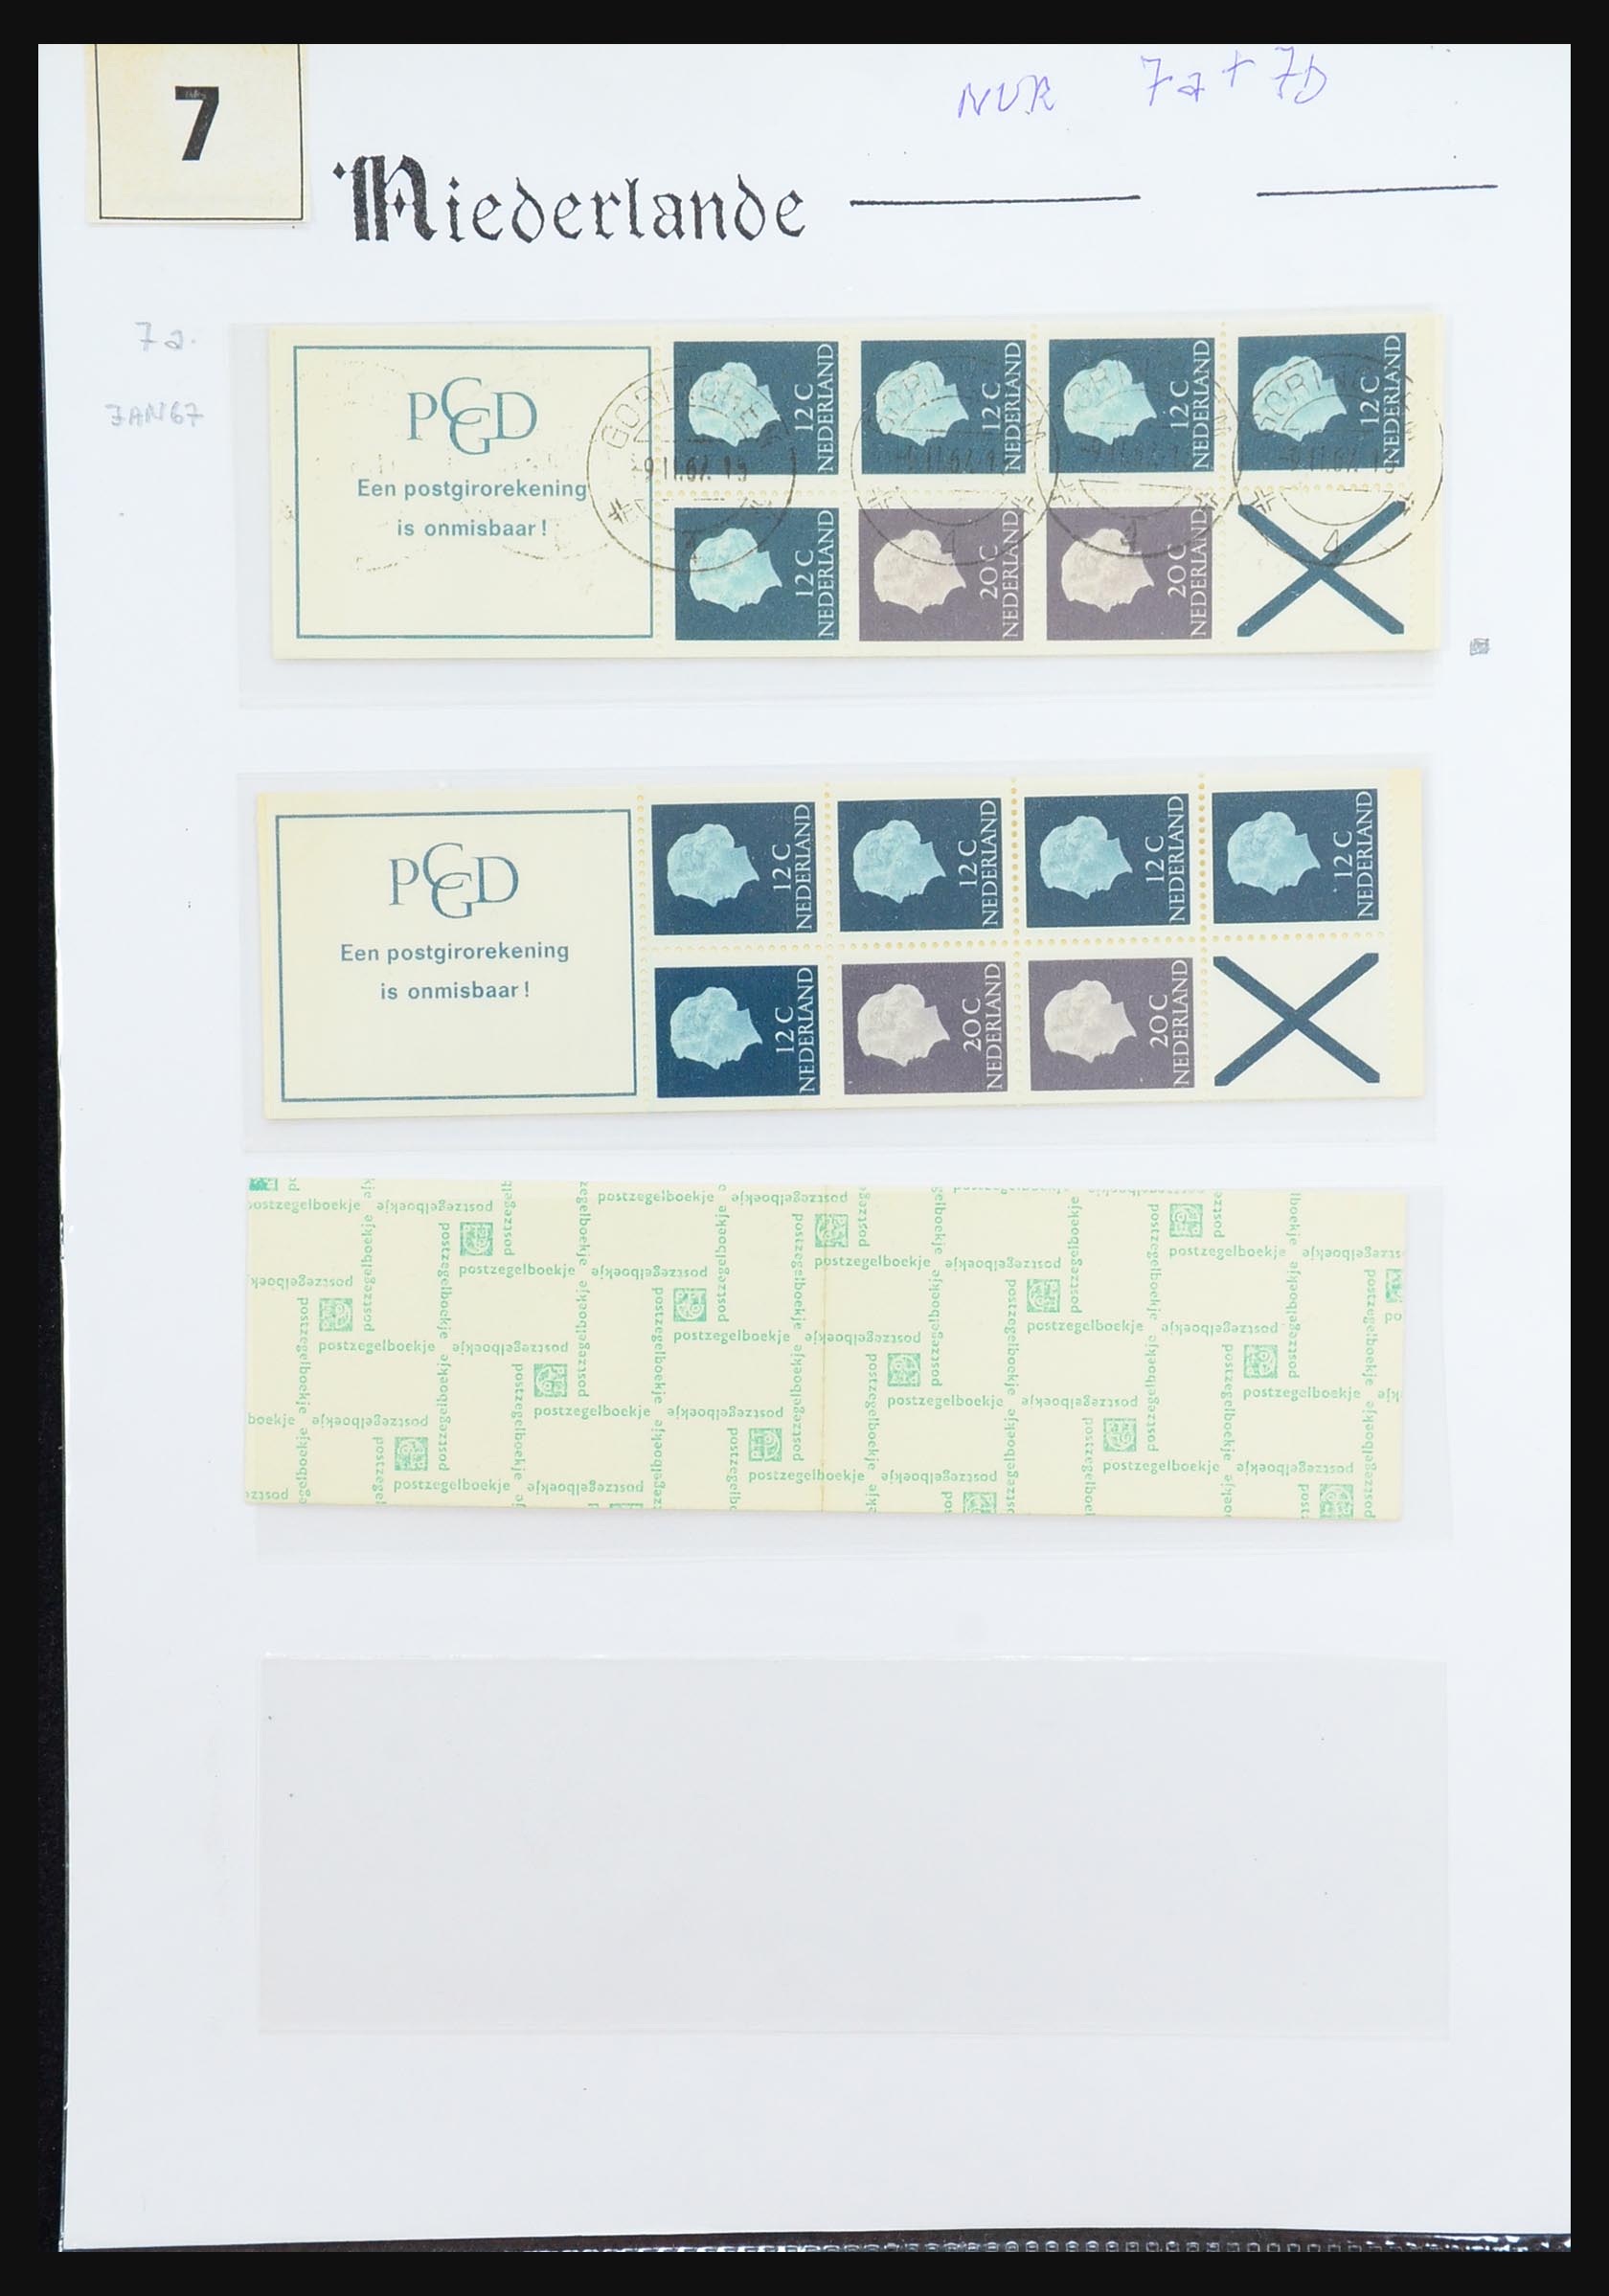 31311 022 - 31311 Netherlands stamp booklets 1964-1994.